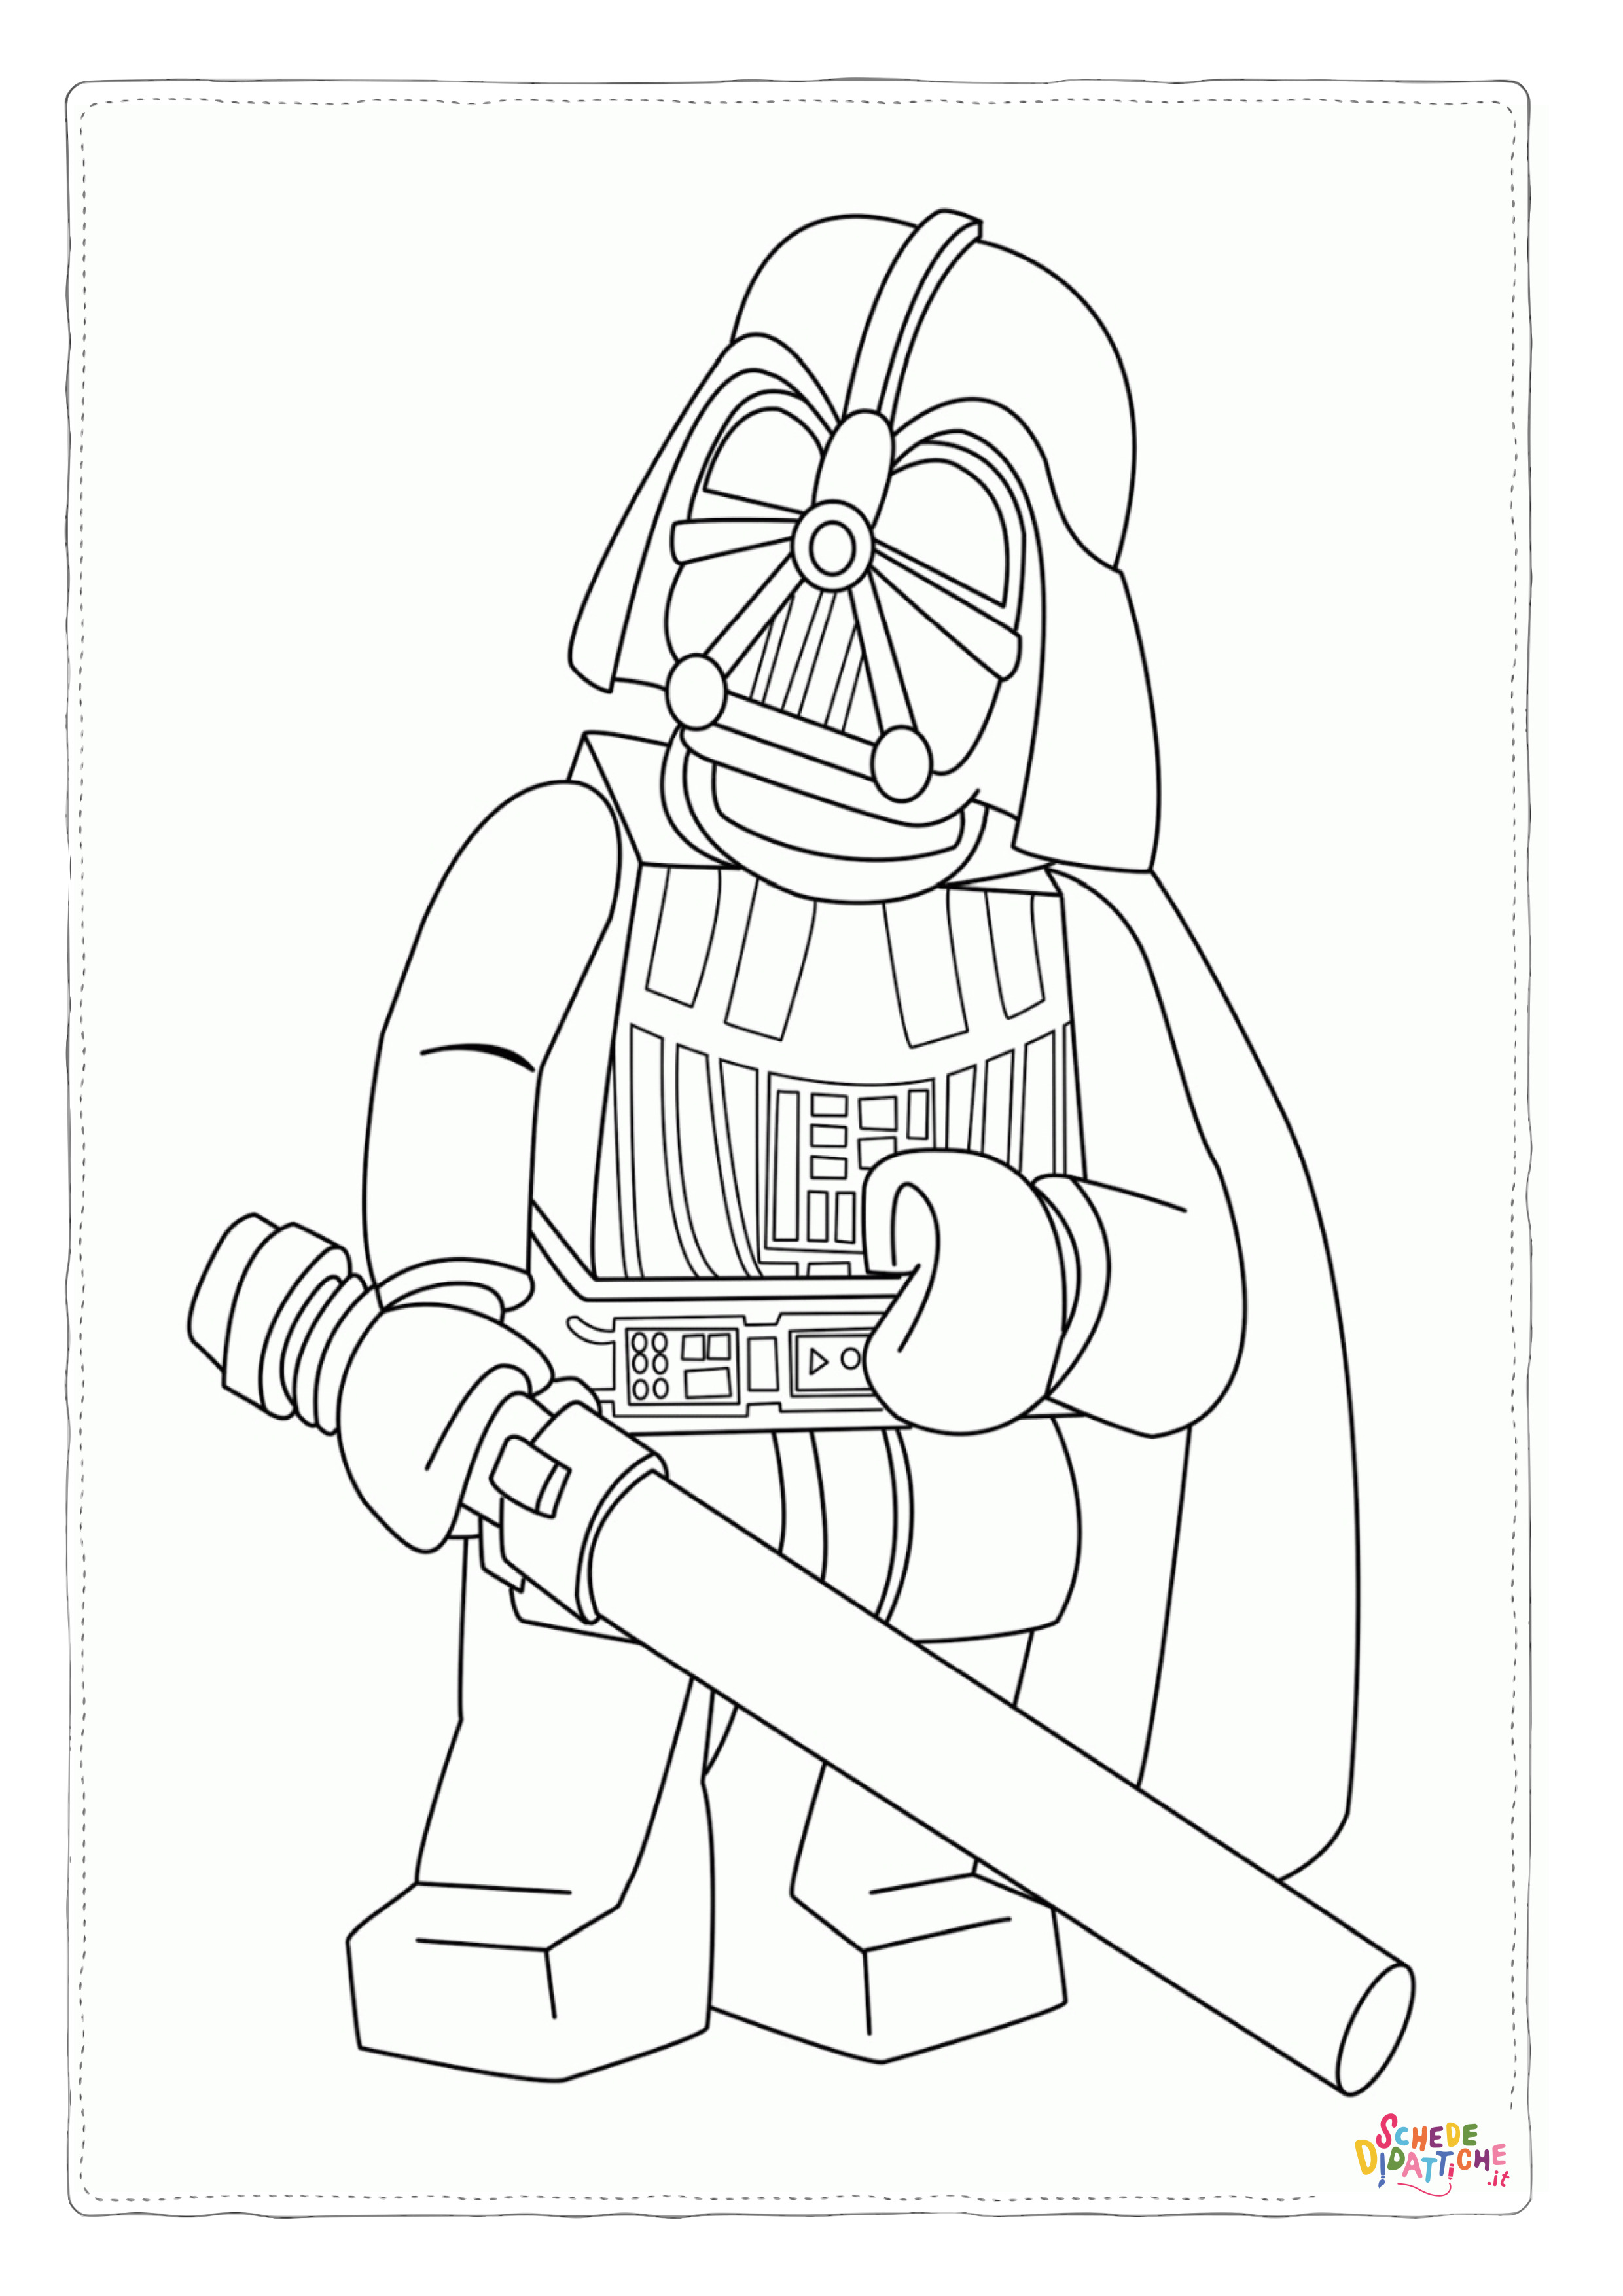 Disegno di LEGO Star Wars da stampare e colorare 1